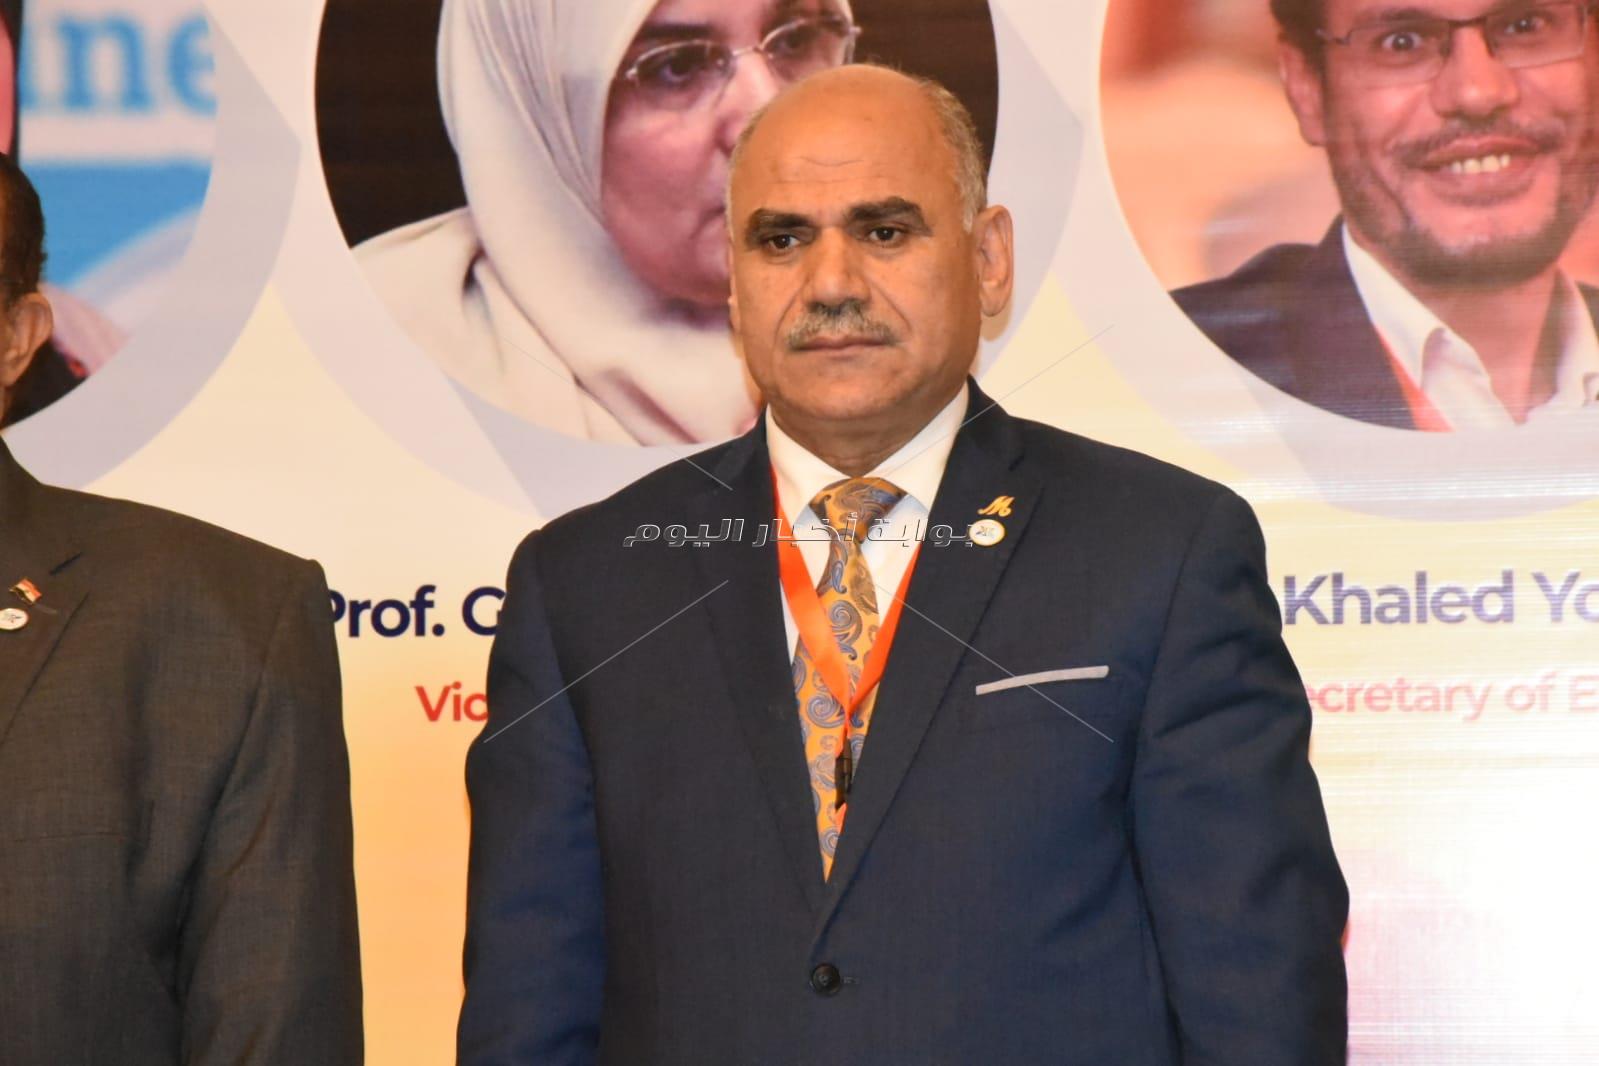 رئيس جامعة الأقصر يشهد افتتاح المؤتمر الدولي الثالث للغدة الدرقية